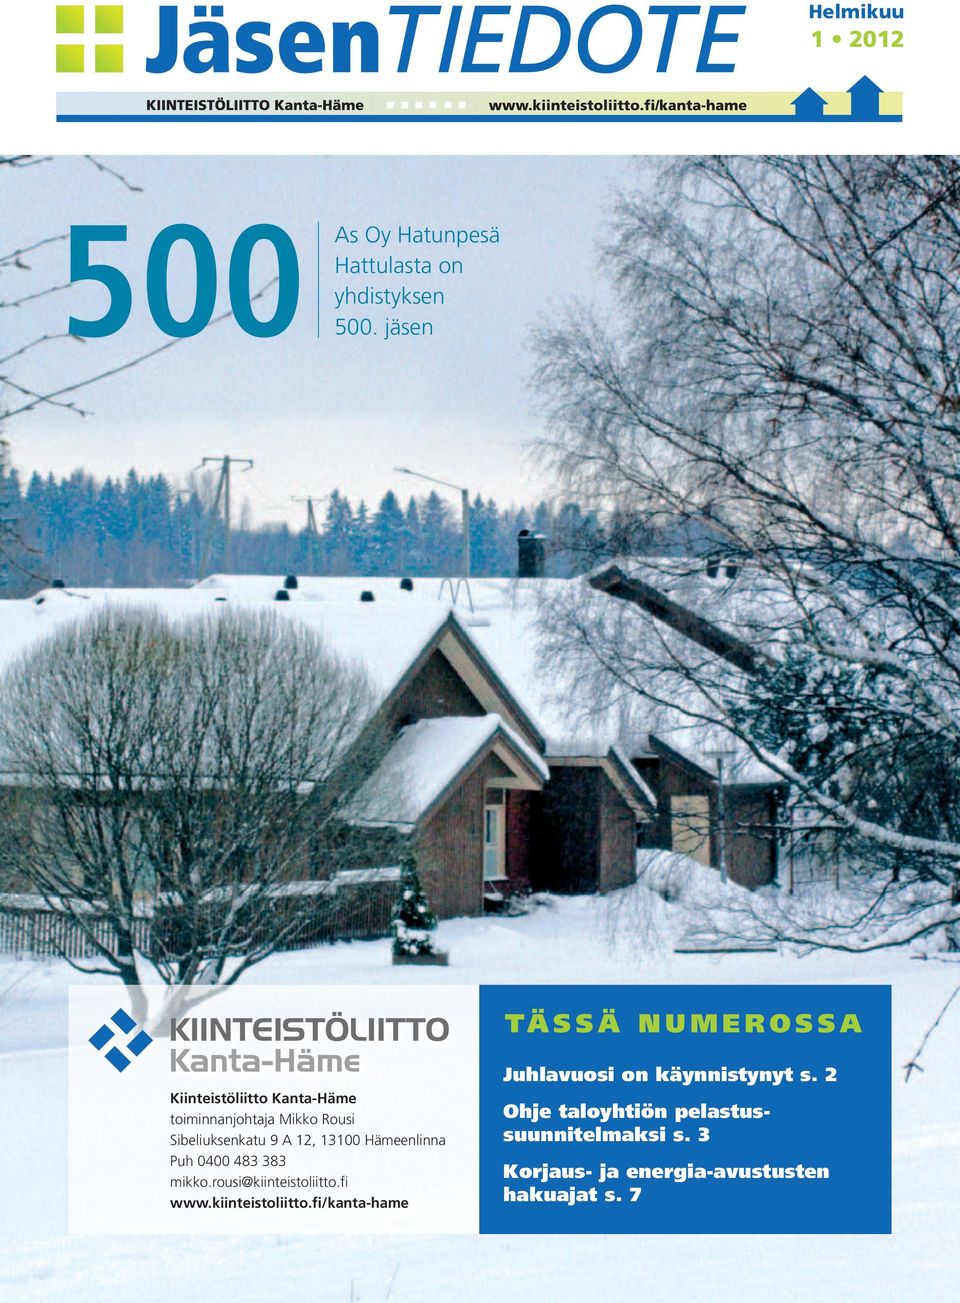 Sibeliuksenkatu 9 A 12, 13100 Hämeenlinna Puh 0400 483 383 mikko.rousi@kiinteistoliitto.fi www.